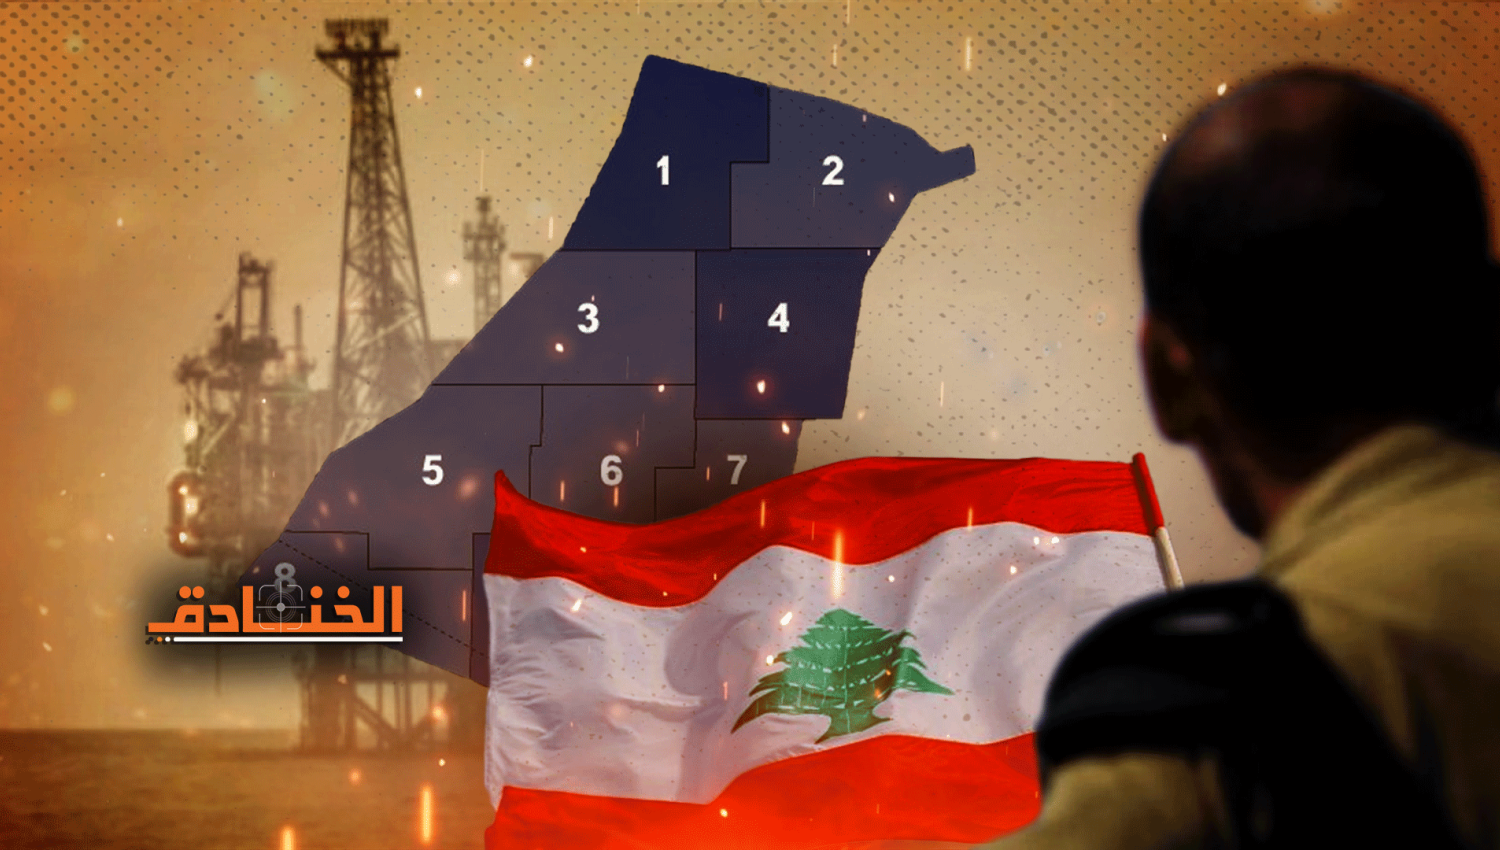 لبنان اكتشف ثروته البحرية منذ الـ 43: مُنع من استخراجها لصالح تأسيس الكيان!